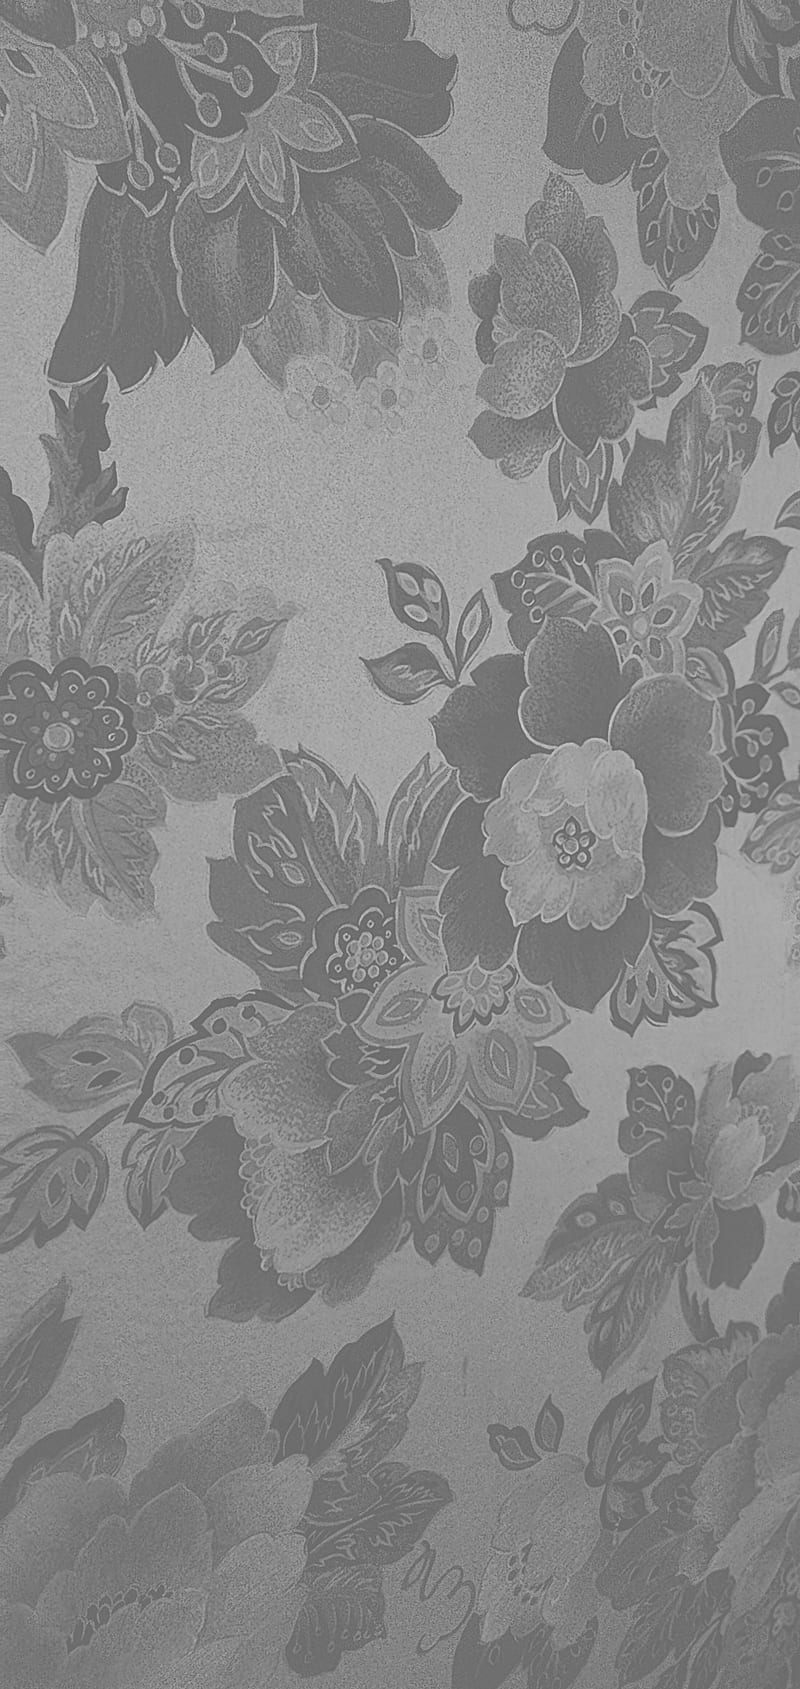 Grey Floral Background Images  Free Download on Freepik